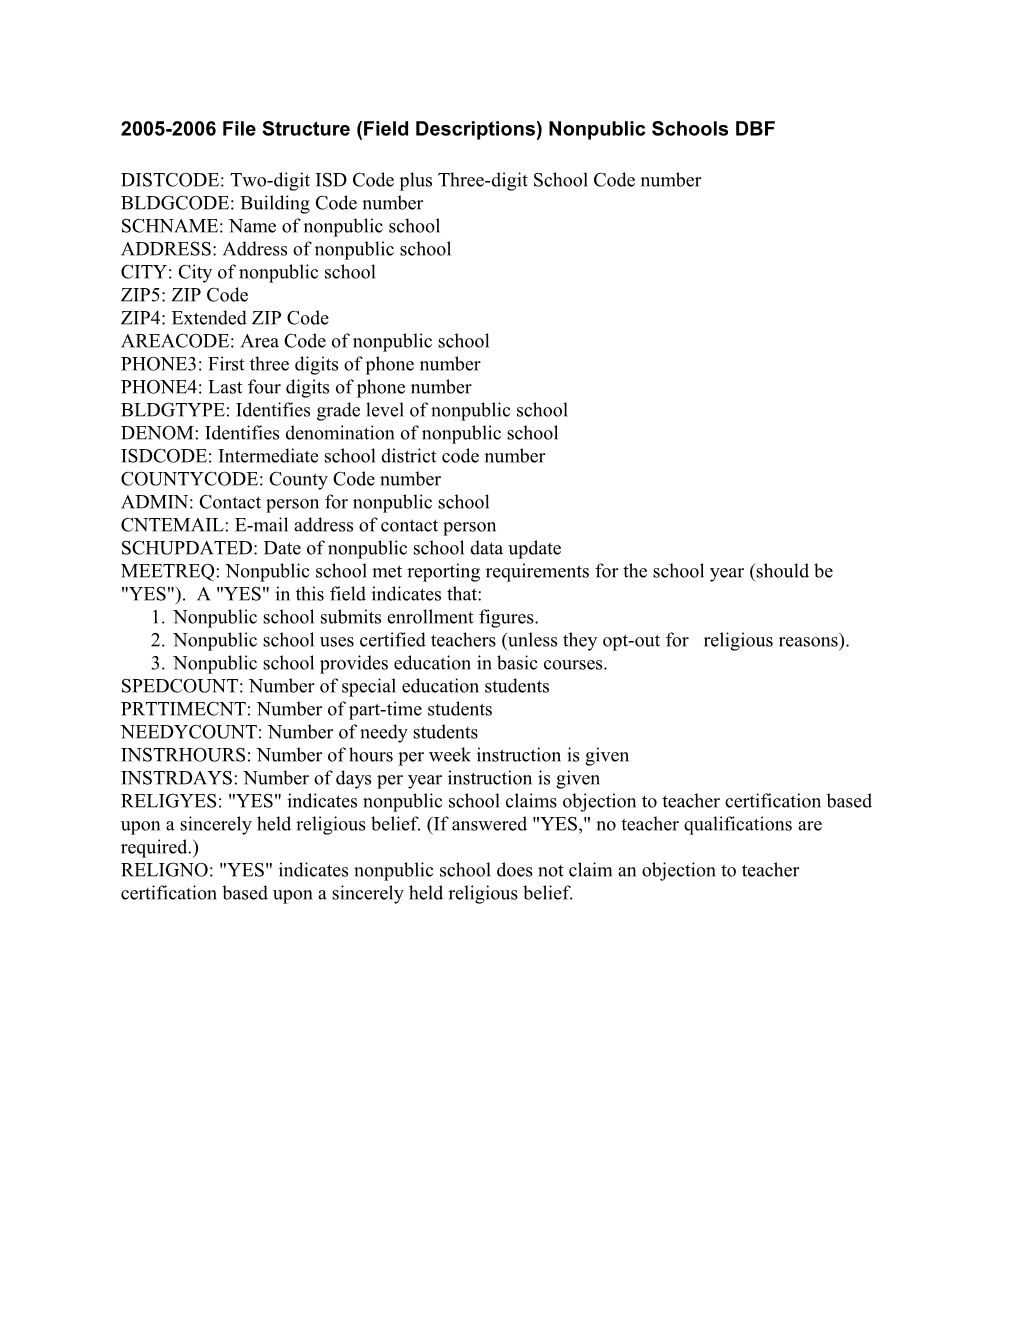 2005-2006 File Structure (Field Descriptions) Nonpublic Schools Dbf